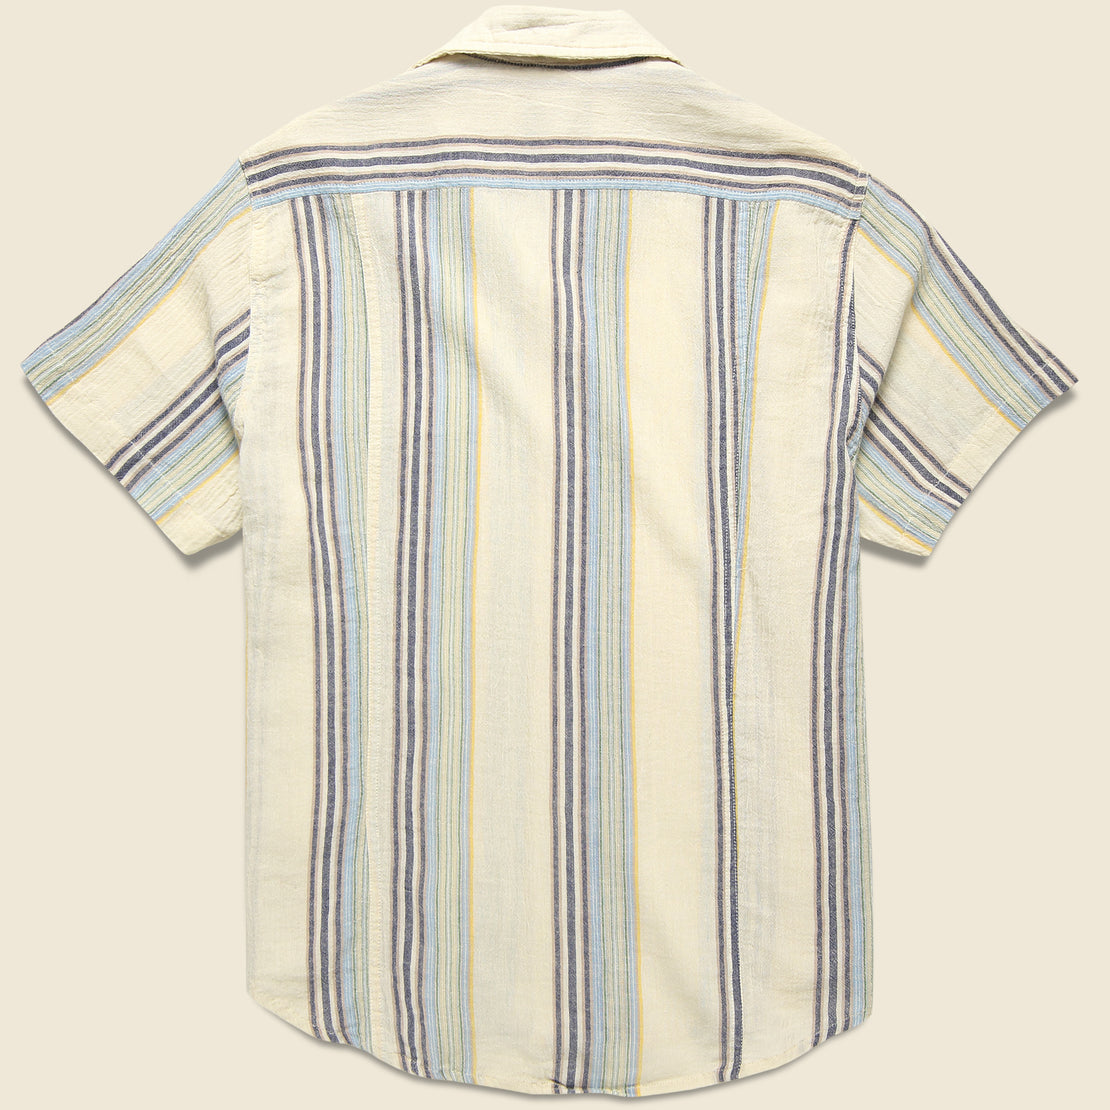 Beachside Stripe Shirt - Blue Multi/Cream - Corridor - STAG Provisions - Tops - S/S Woven - Stripe